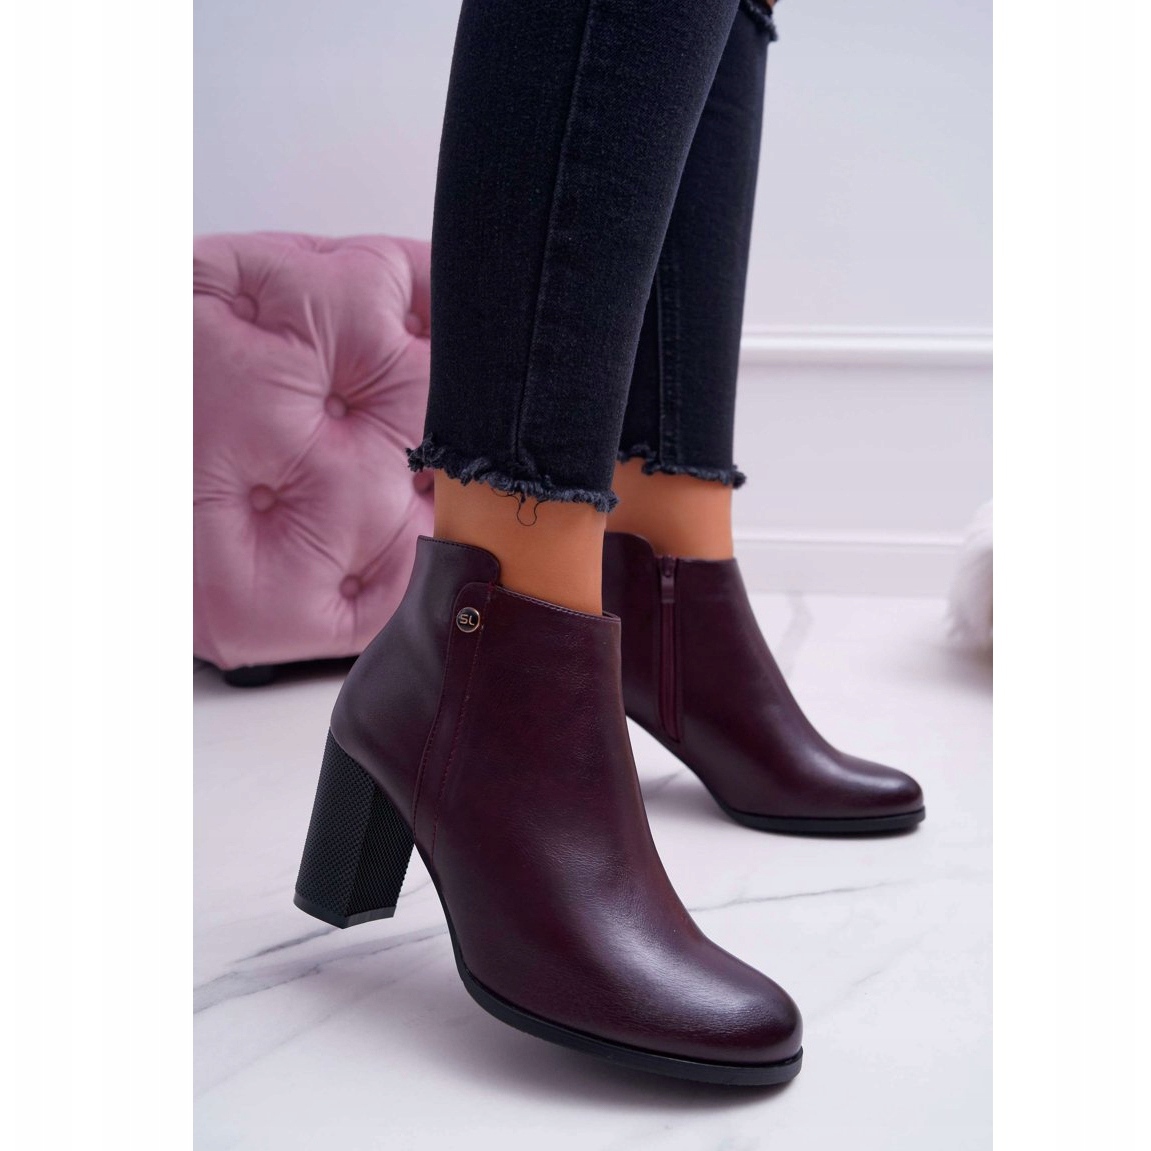 womens boot heels